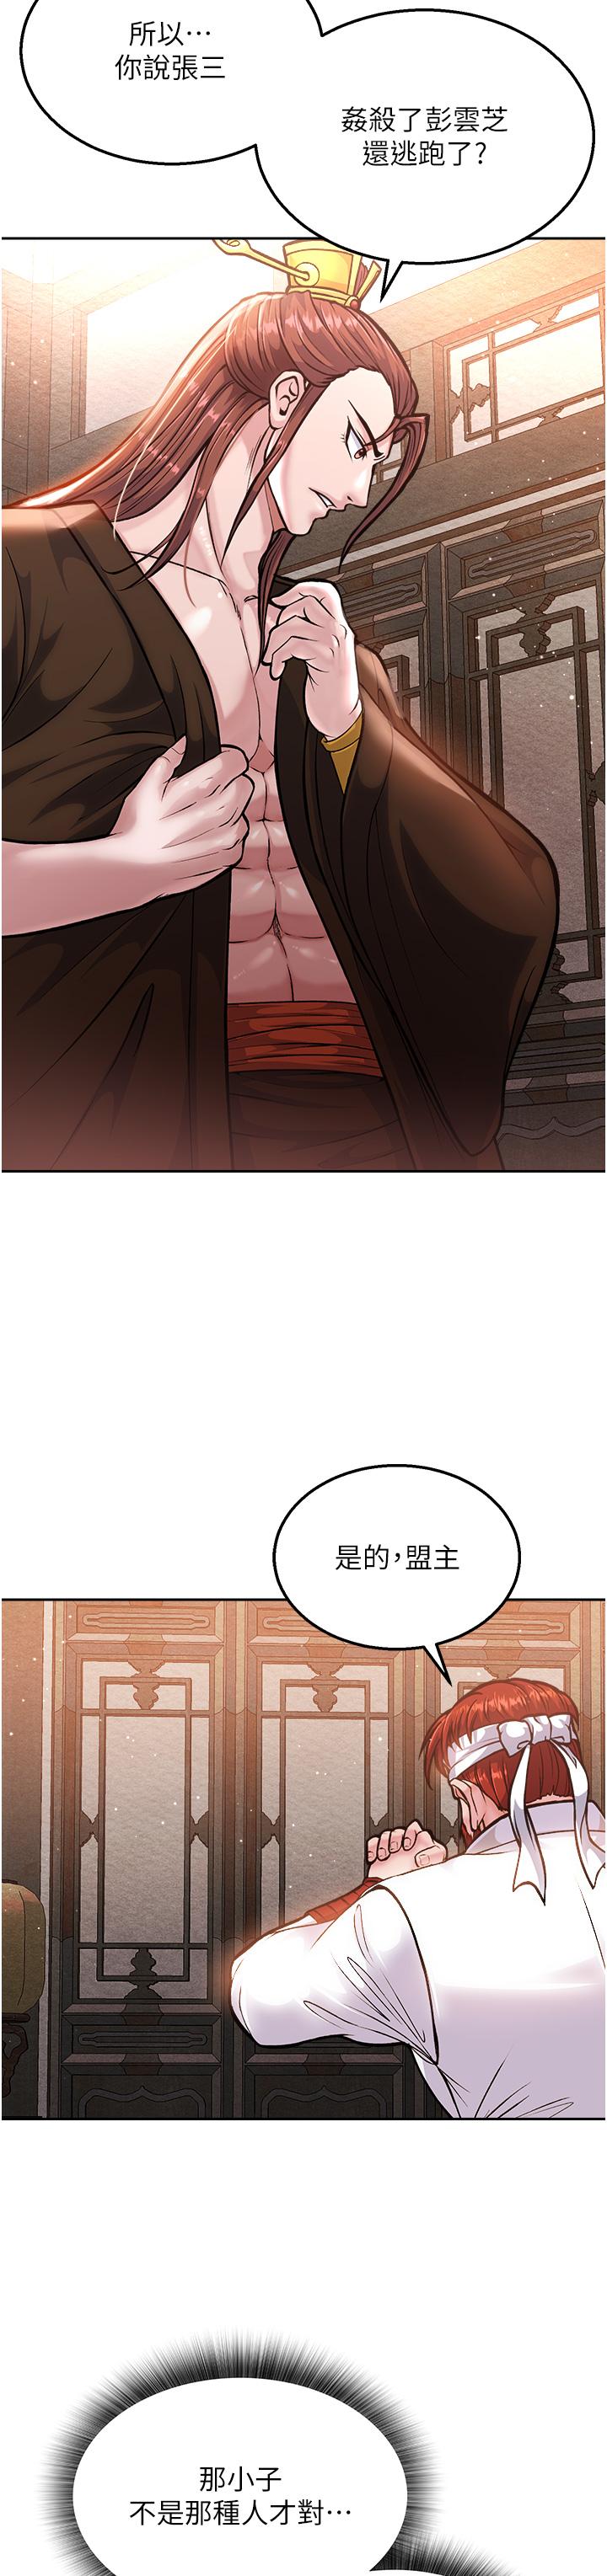 《色鵰英雄傳:一捅天下》在线观看 第5话-阴阳双修之术 漫画图片55